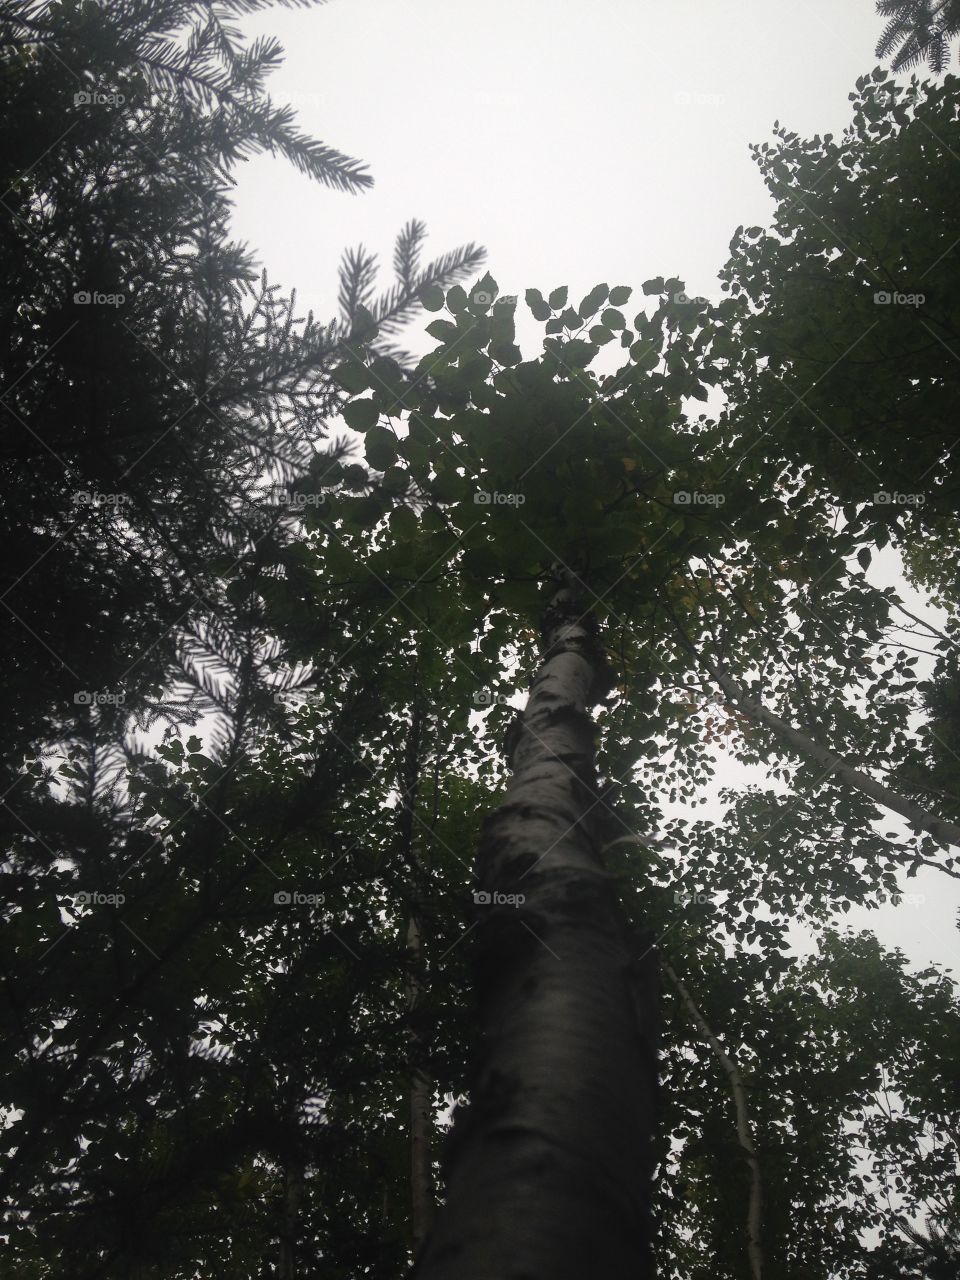 Birch tree from below